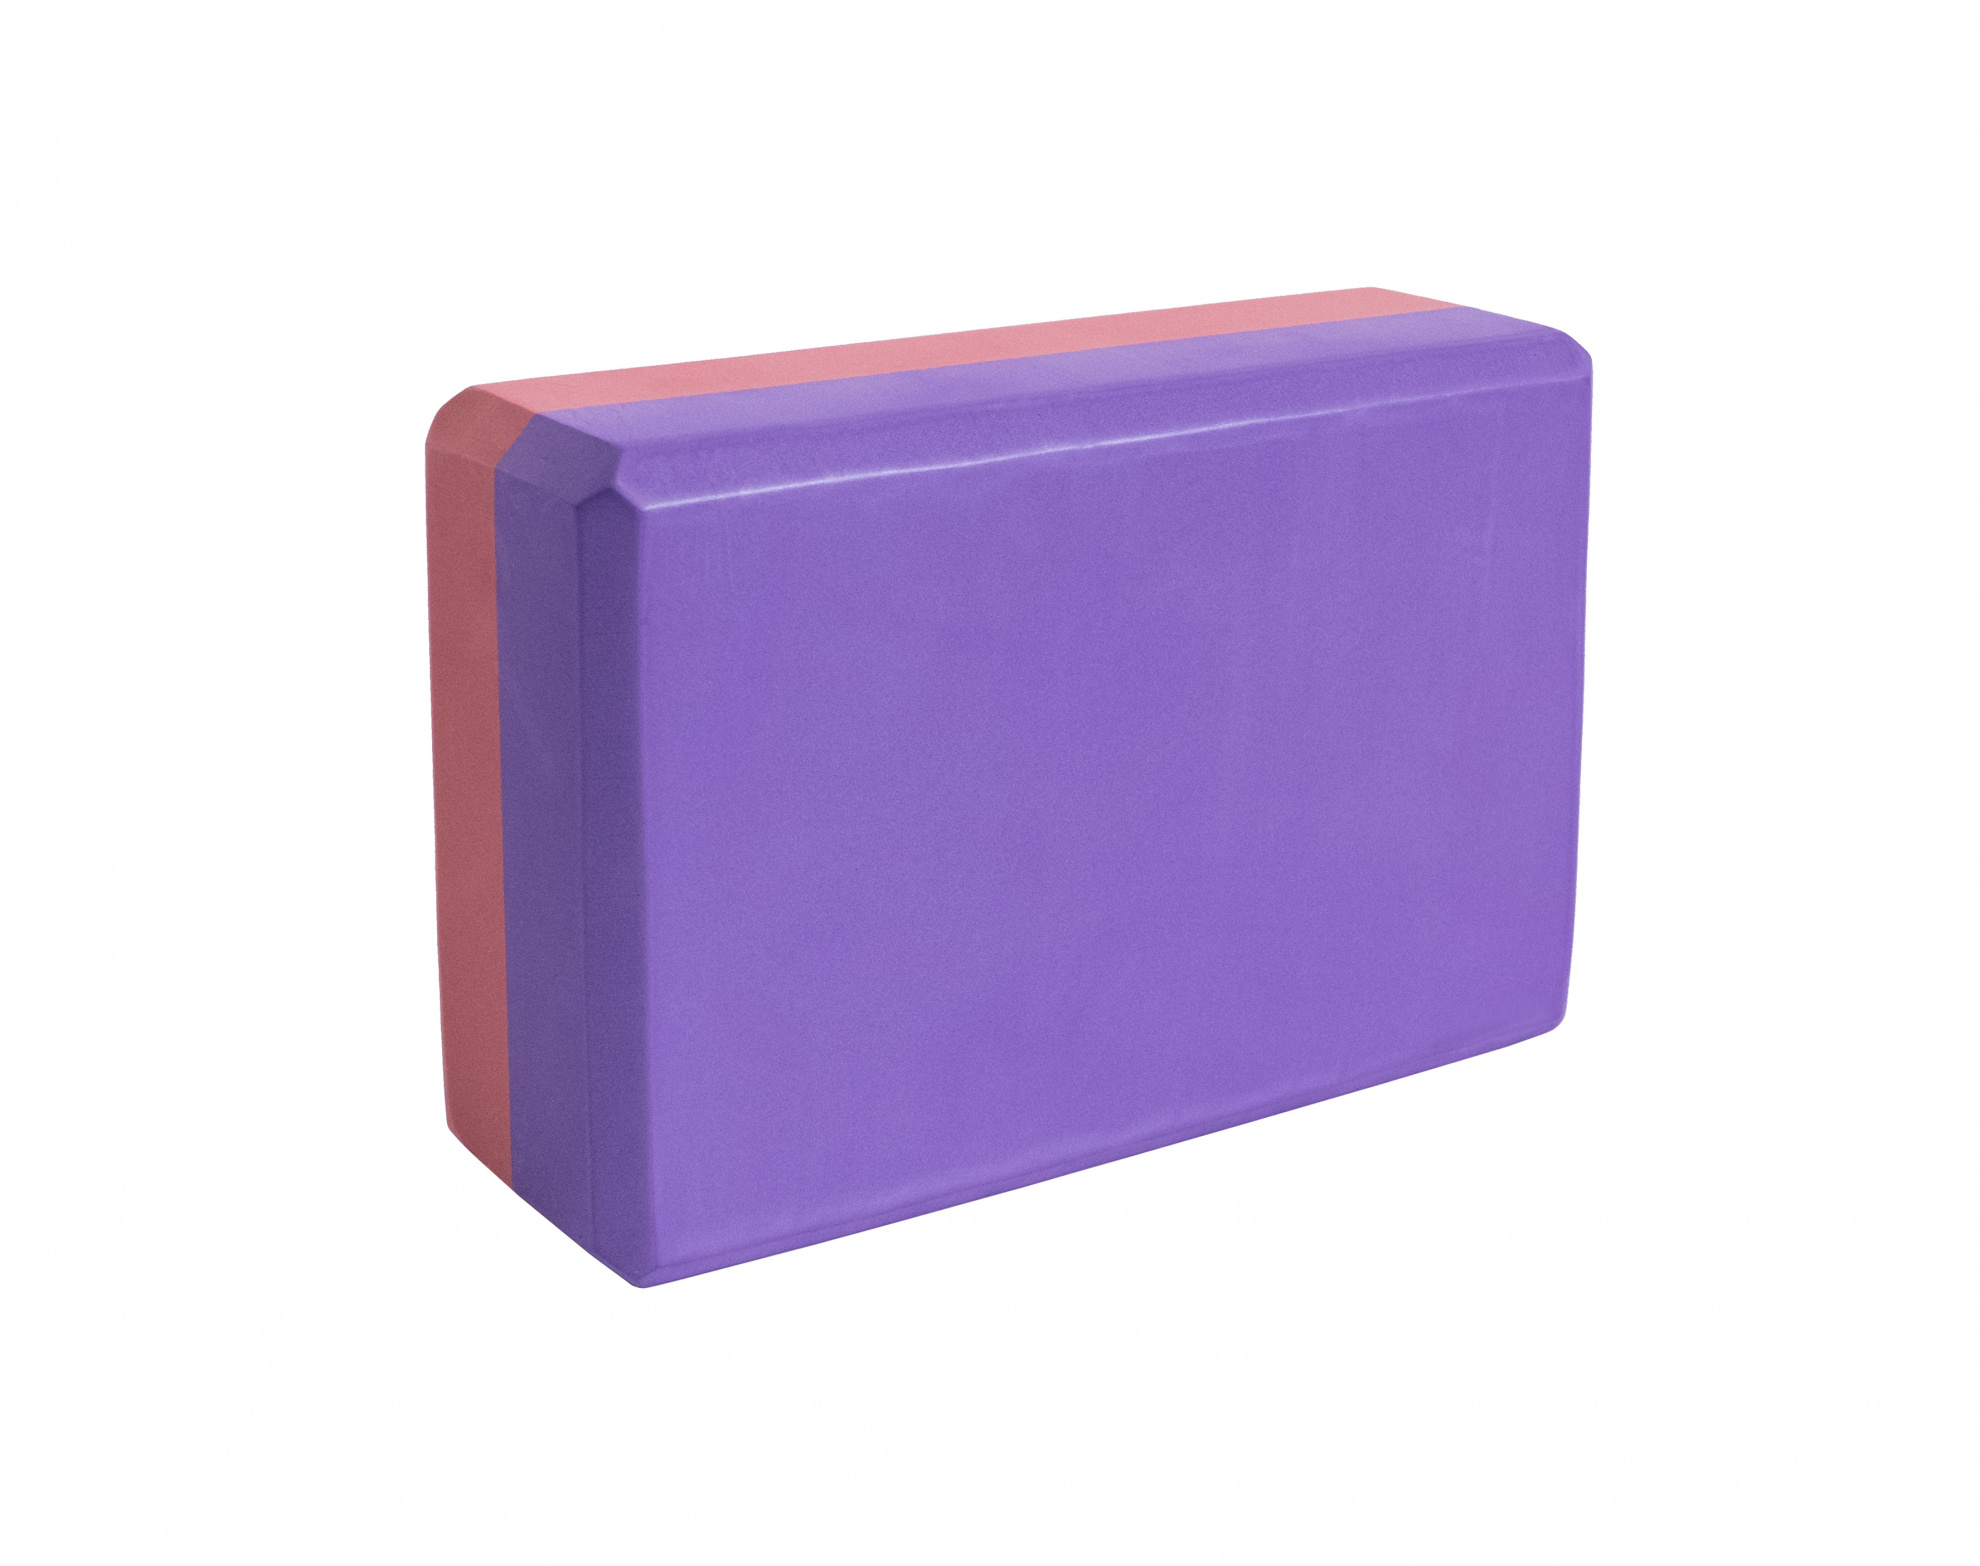 Блок для йоги Ironmaster бордовый-фиолетовый